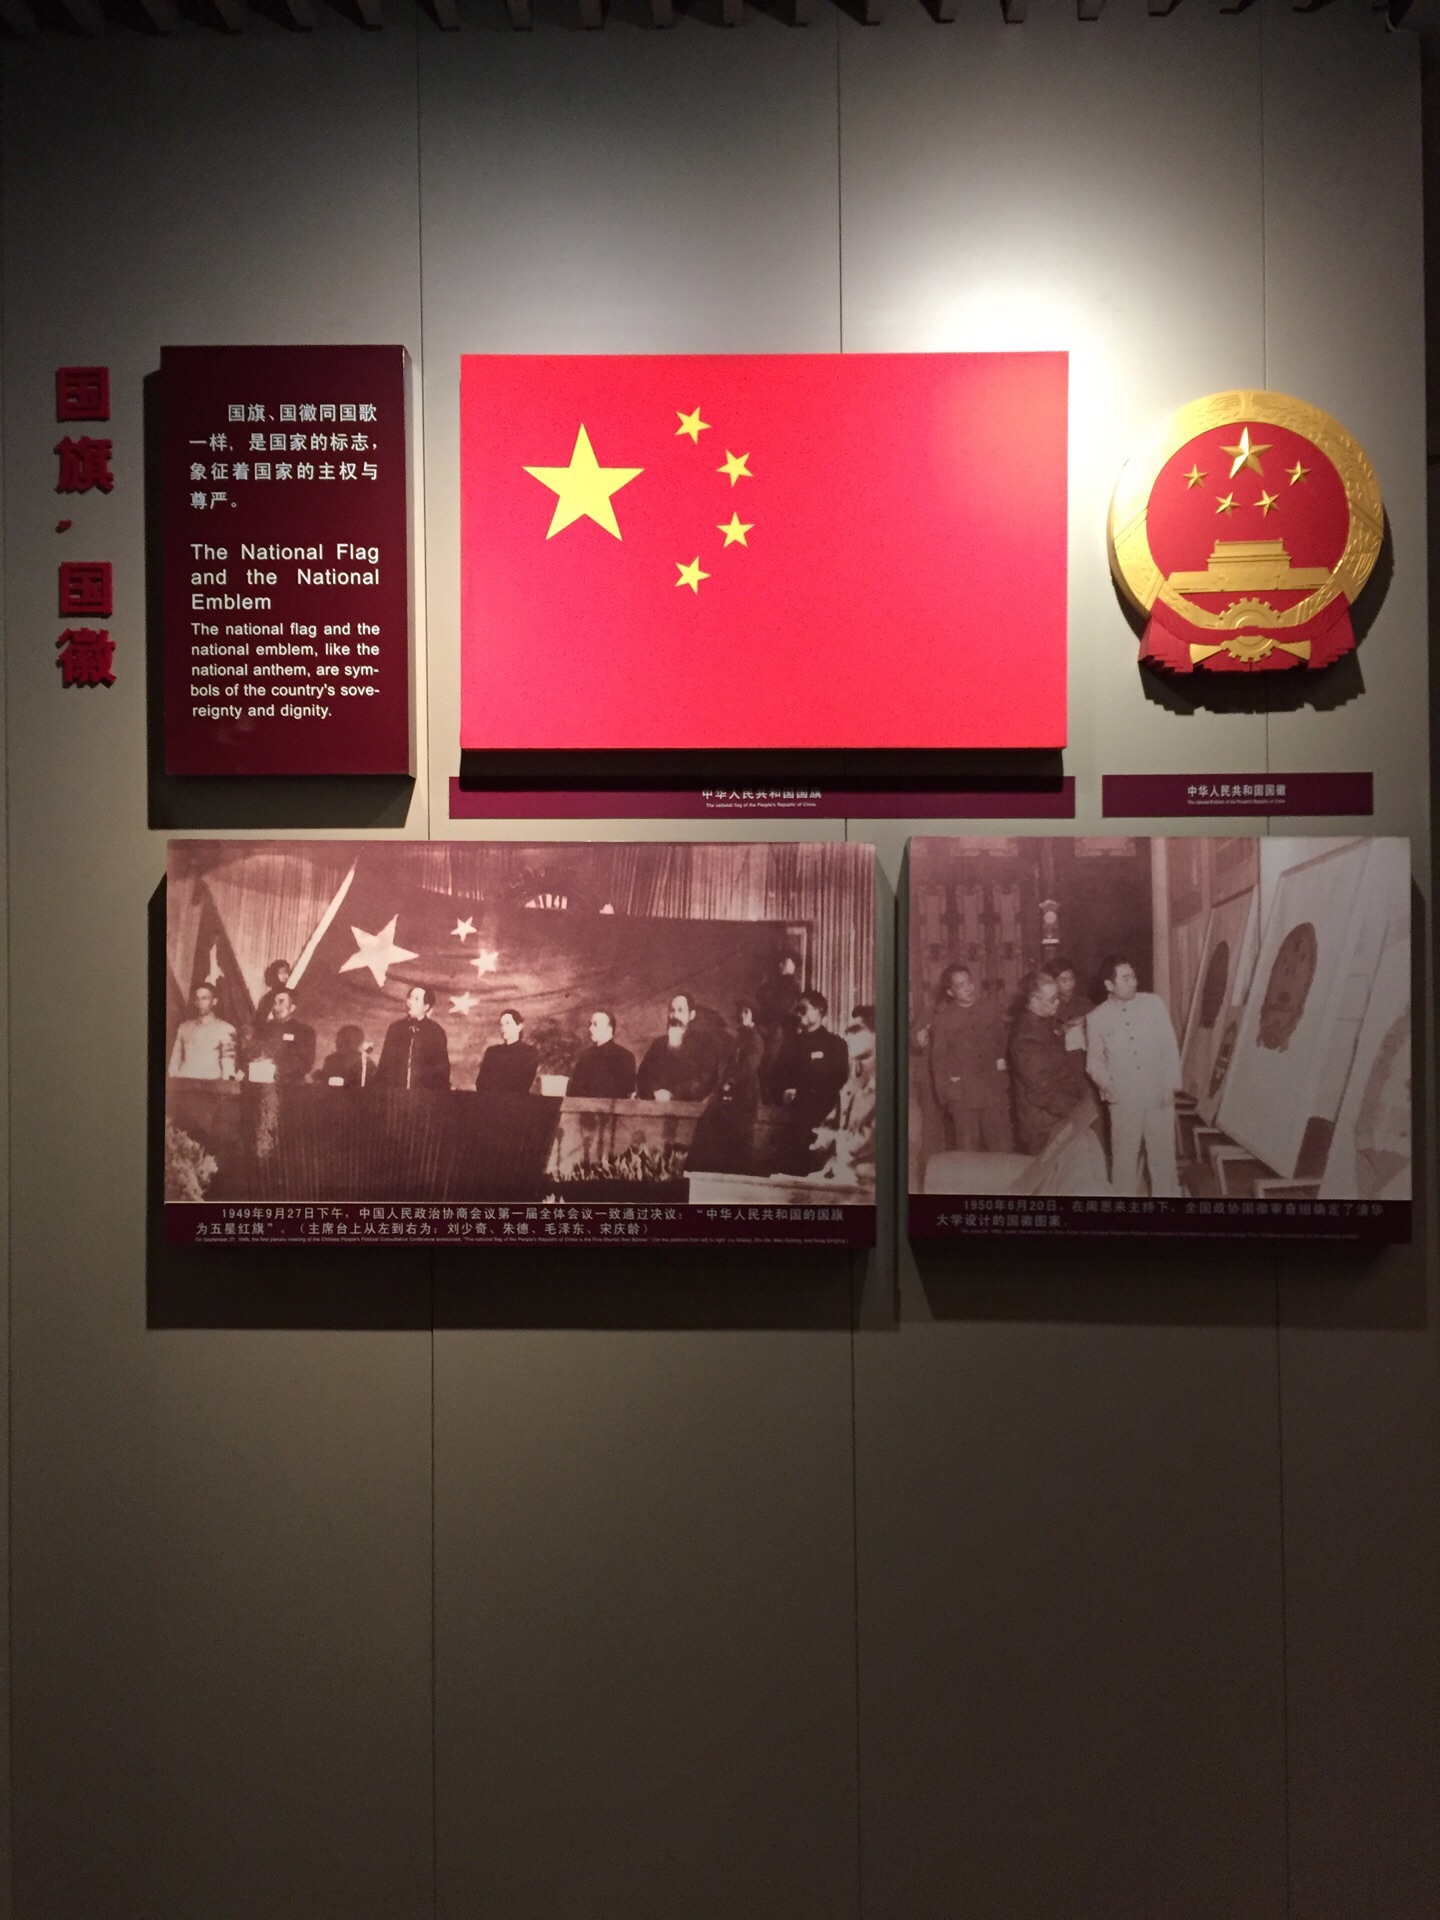 上海国歌展示馆好玩吗,上海国歌展示馆景点怎么样